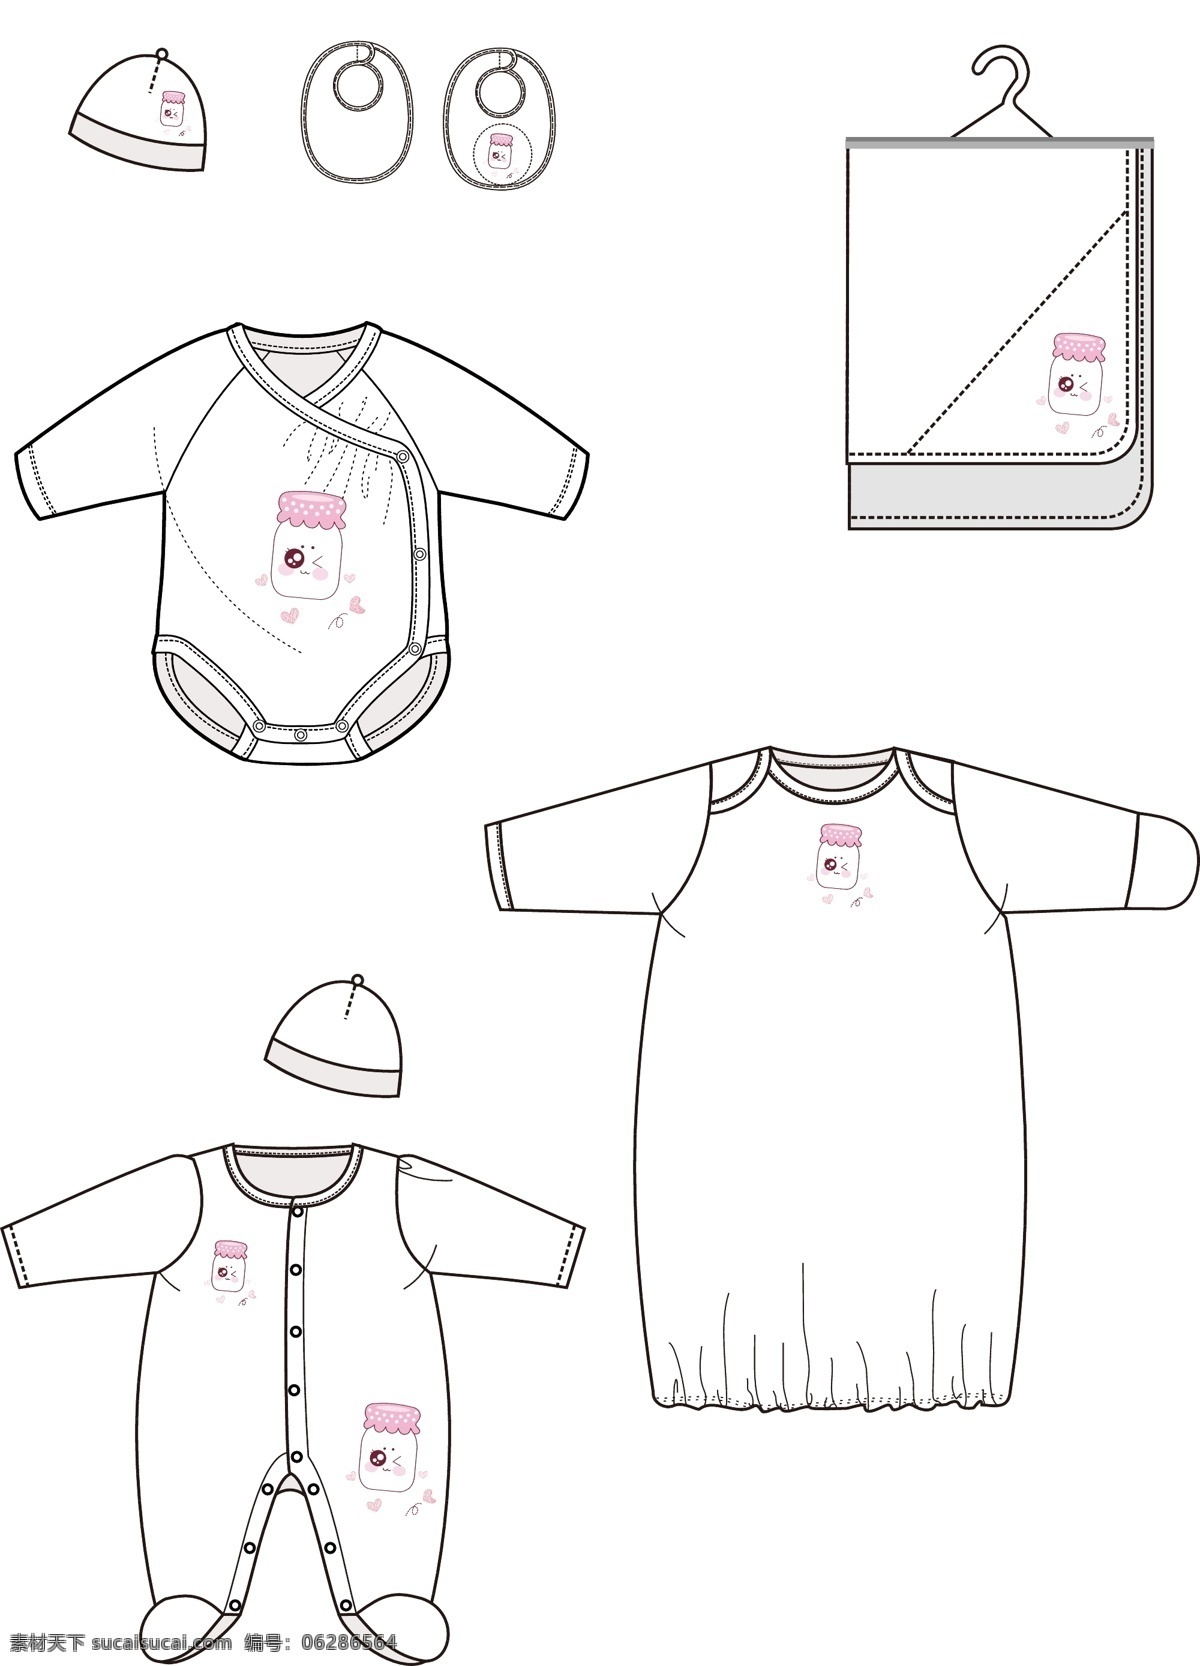 原创 婴童 套装 组合 可爱 女婴童 原创设计 其他原创设计